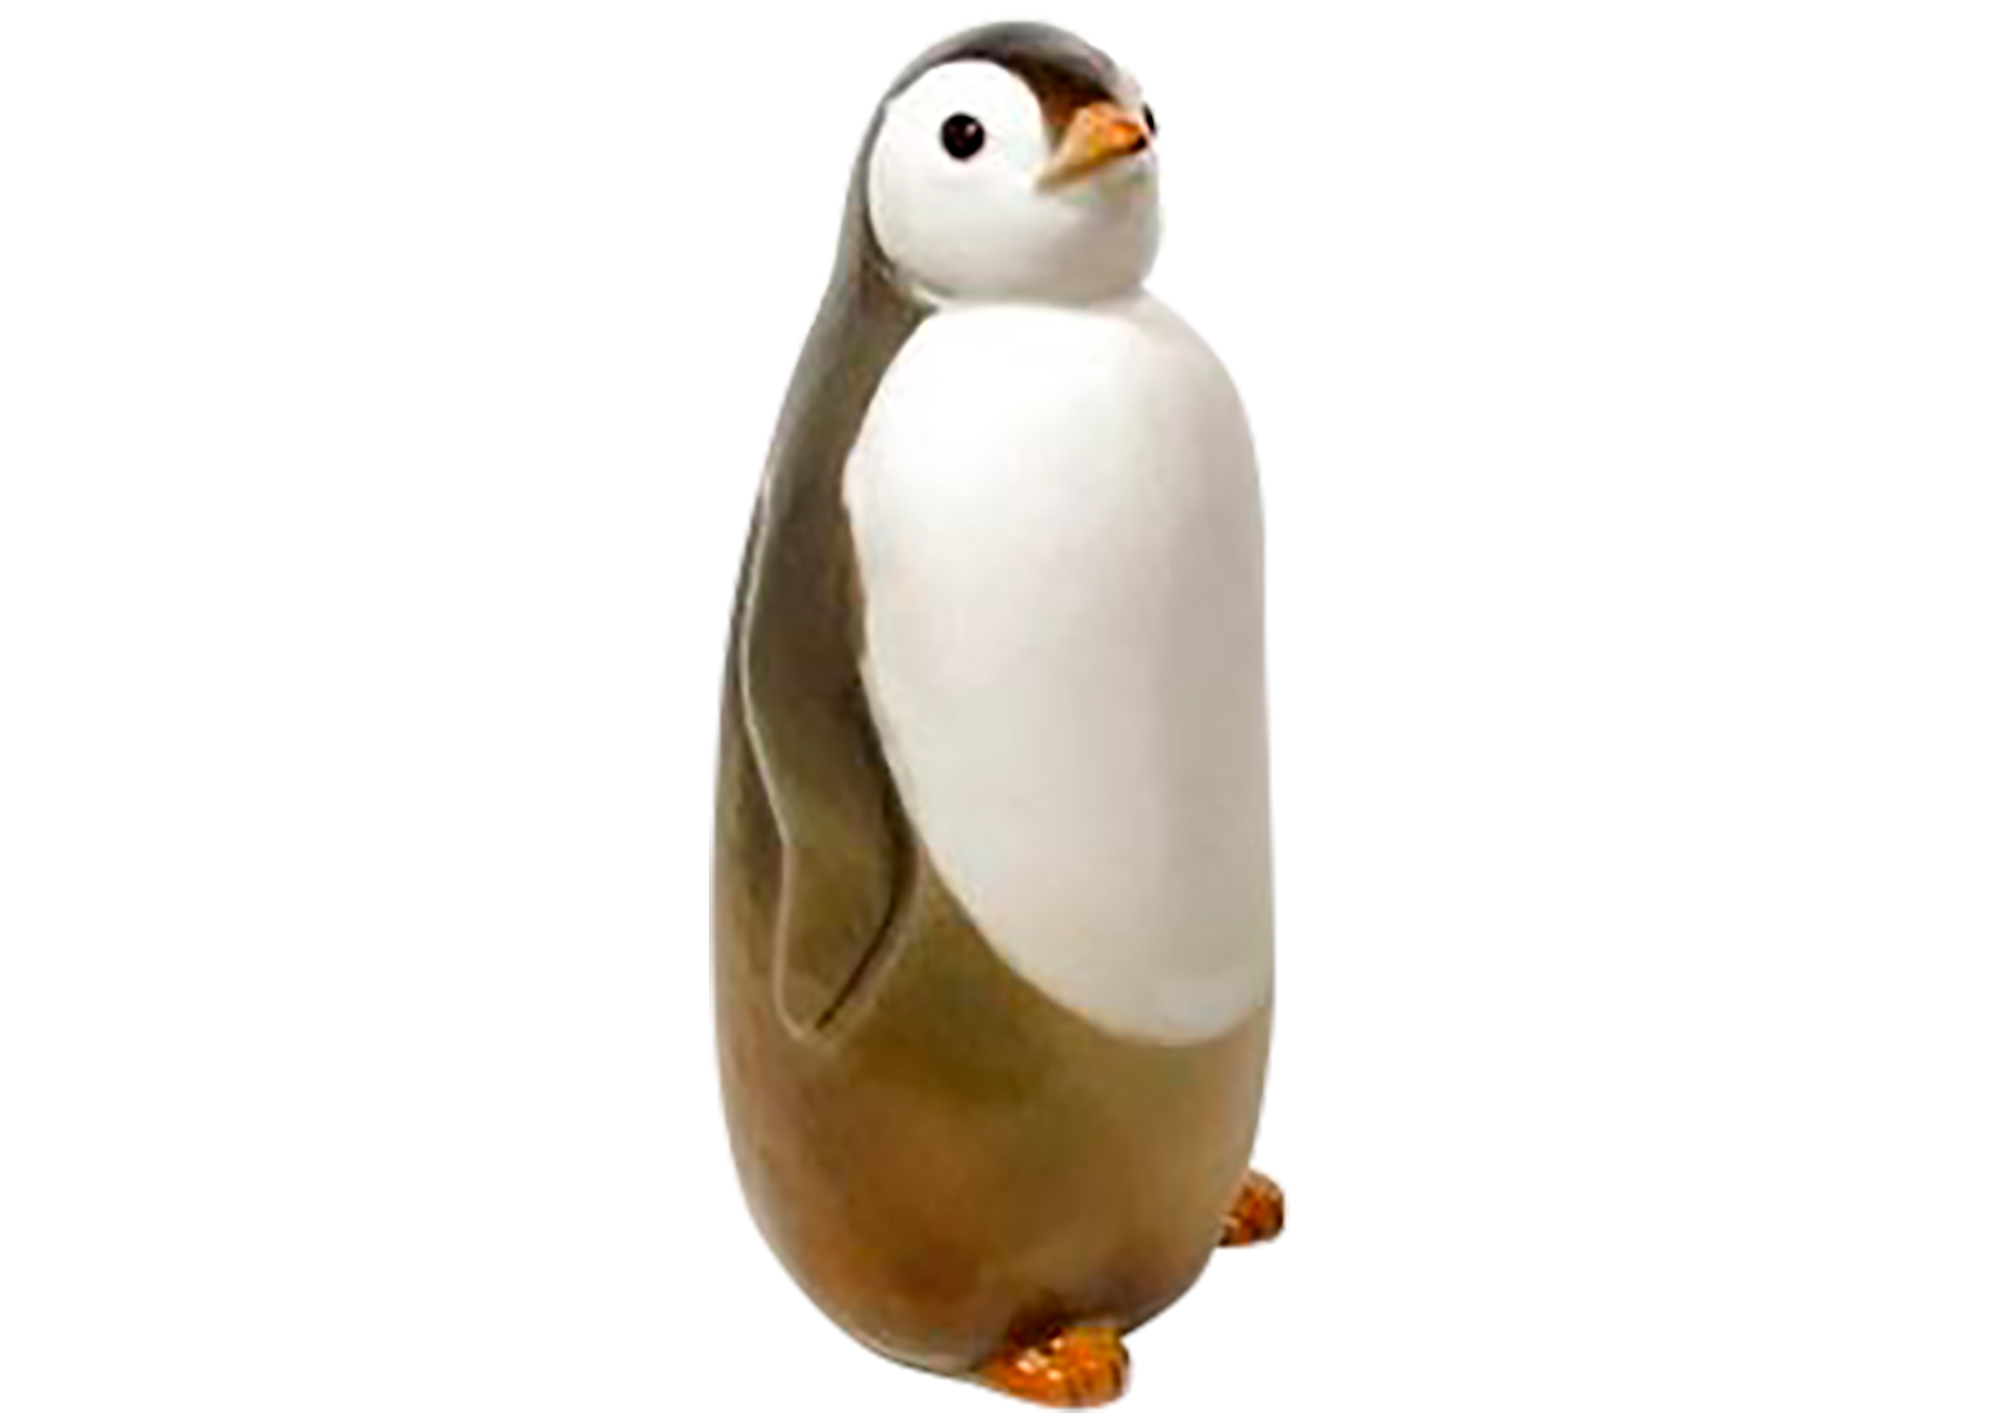 Buy Фарфоровая статуэтка "Пингвин #1" at GoldenCockerel.com